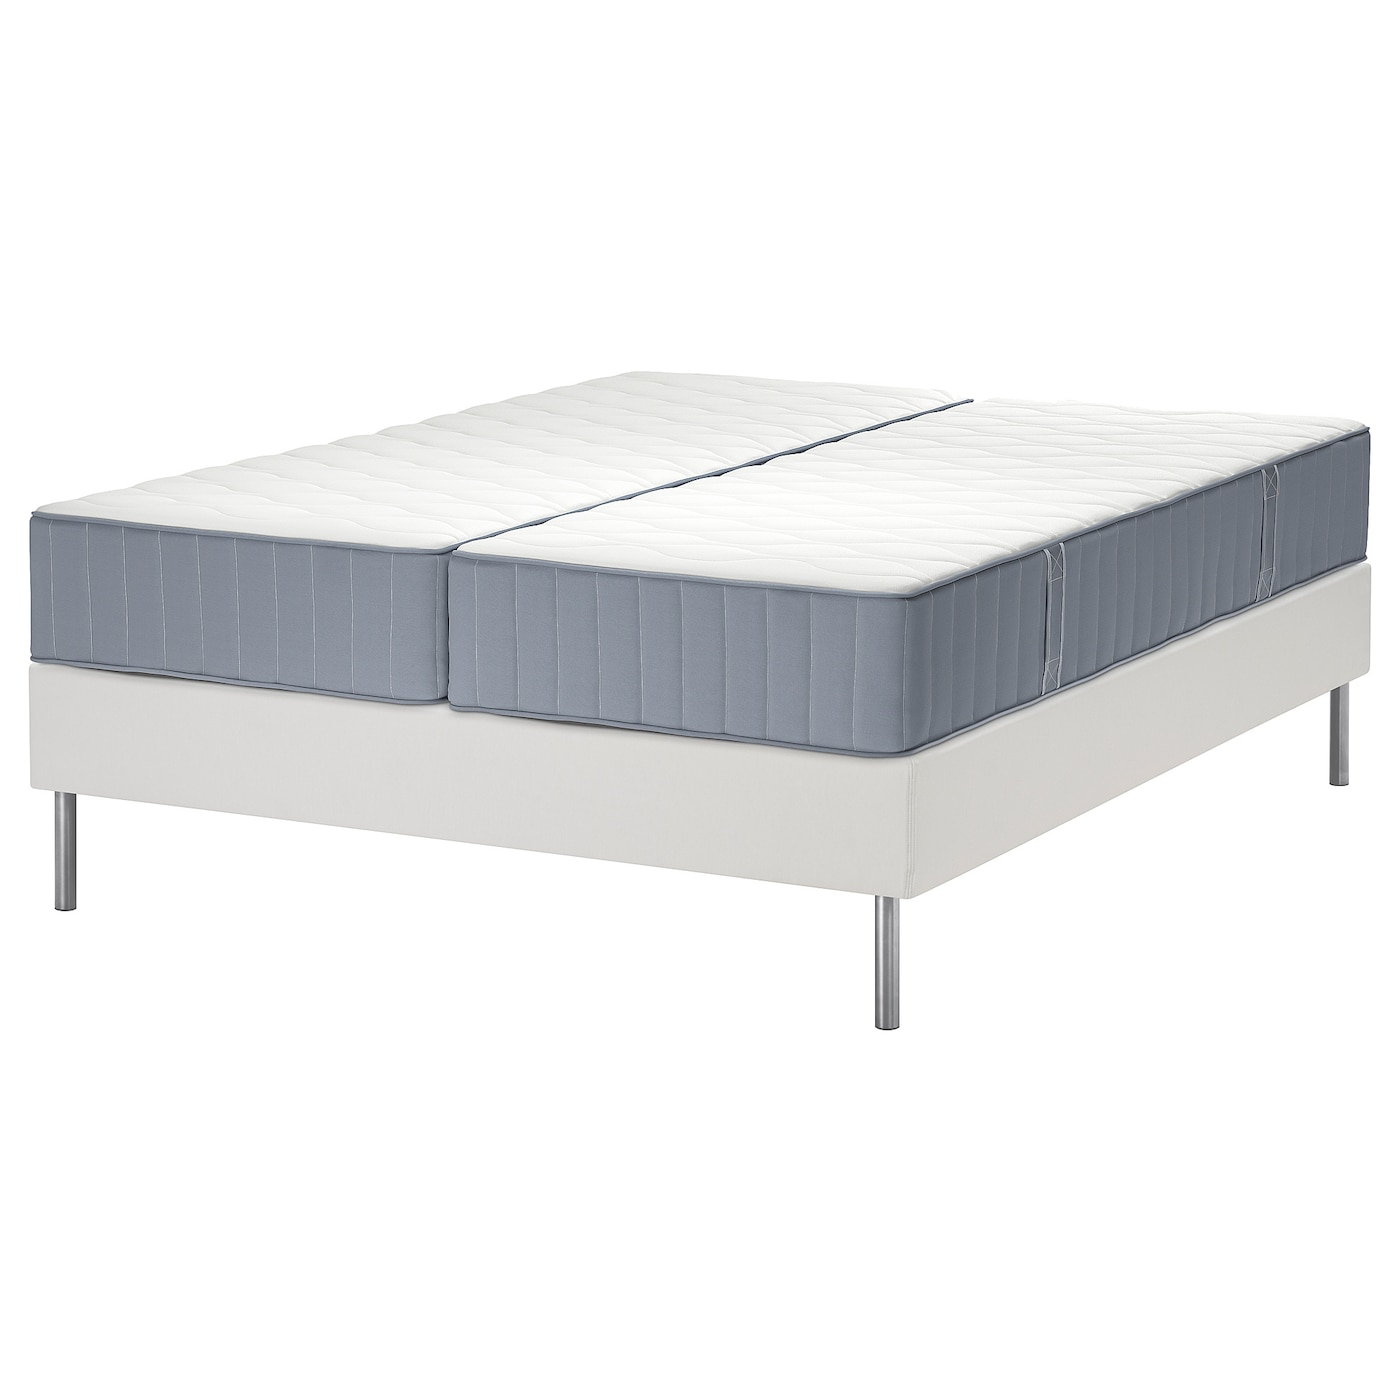 Кровать - LYNGÖR / LYNGОR IKEA/ ЛЮНГЕРЬ ИКЕА,  160х200 см, белый